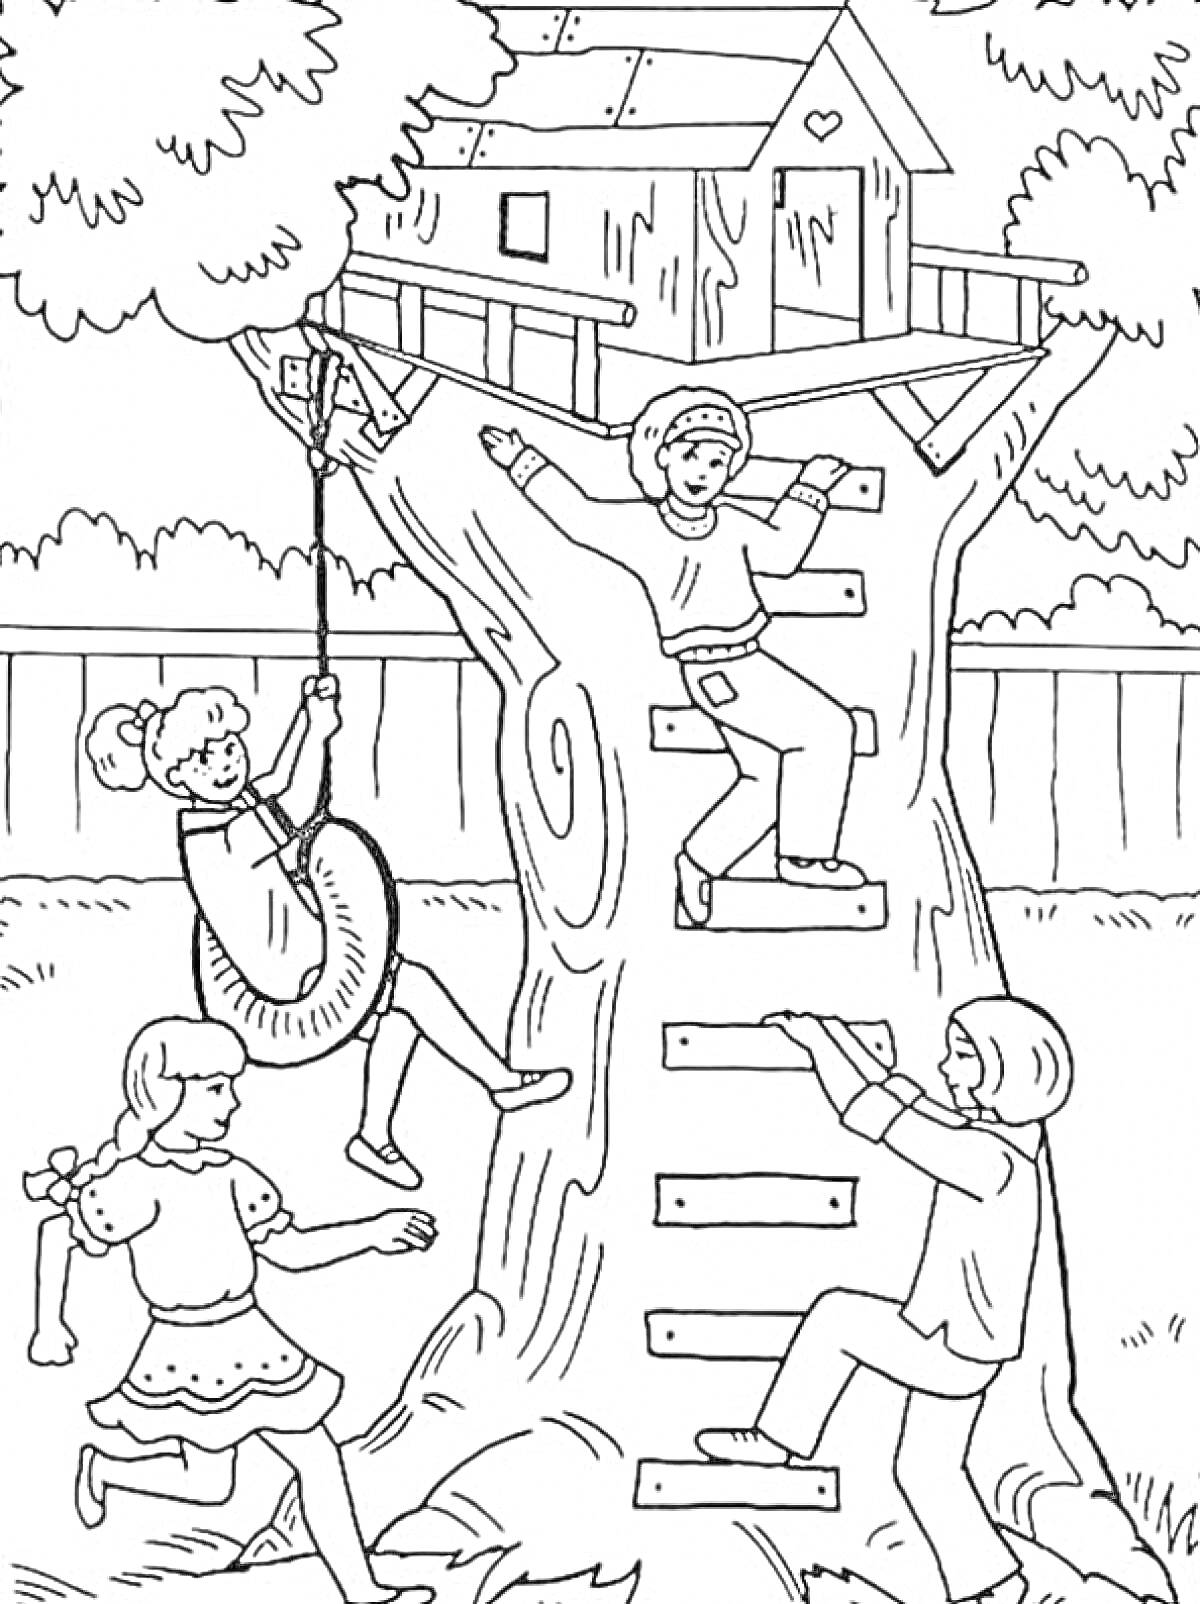 Дети, играющие вокруг домика на дереве с лестницей и качелями